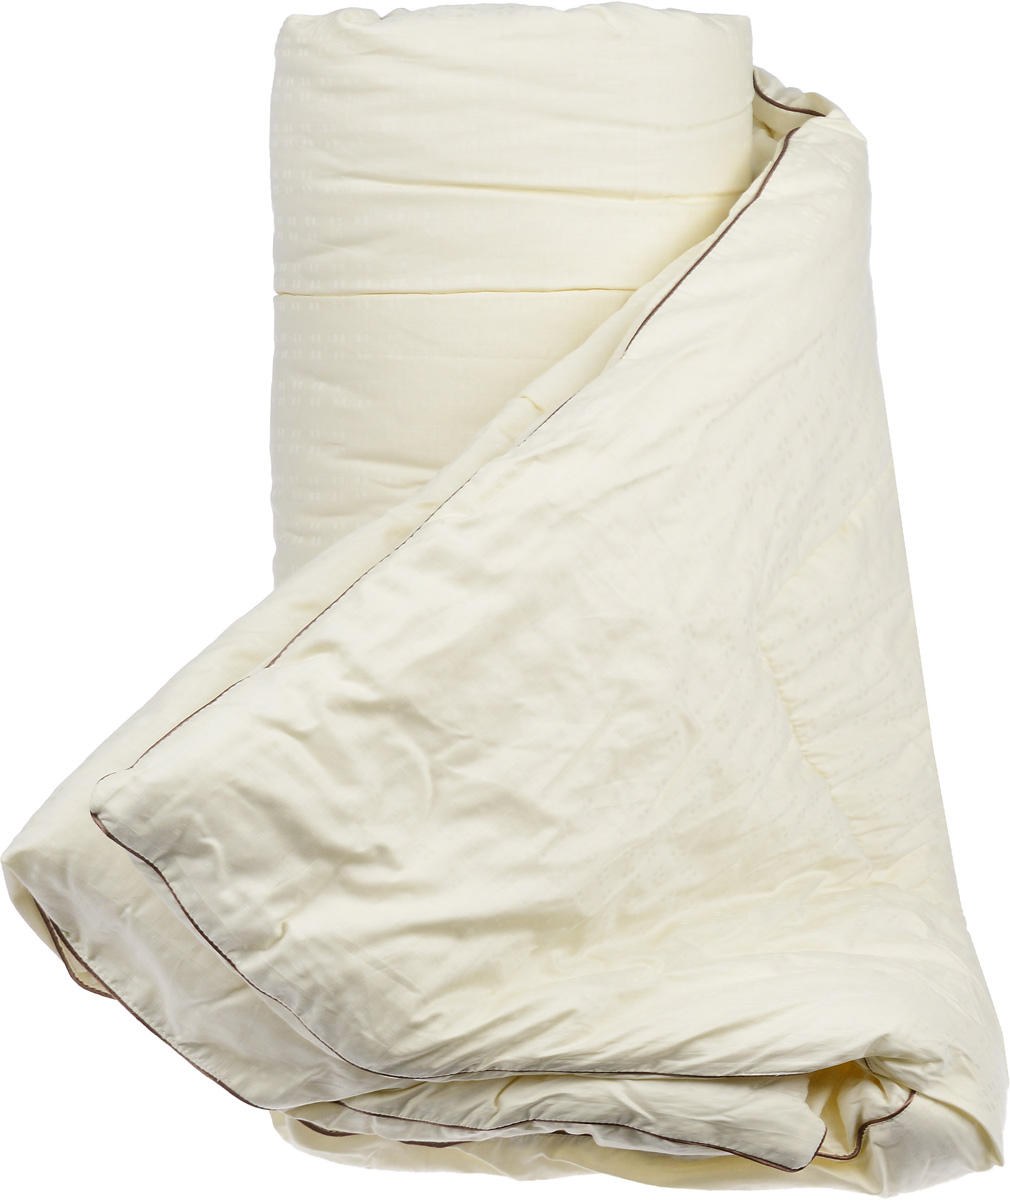 фото Одеяло теплое Легкие сны "Милана", наполнитель: шерсть кашмирской козы, 200 х 220 см